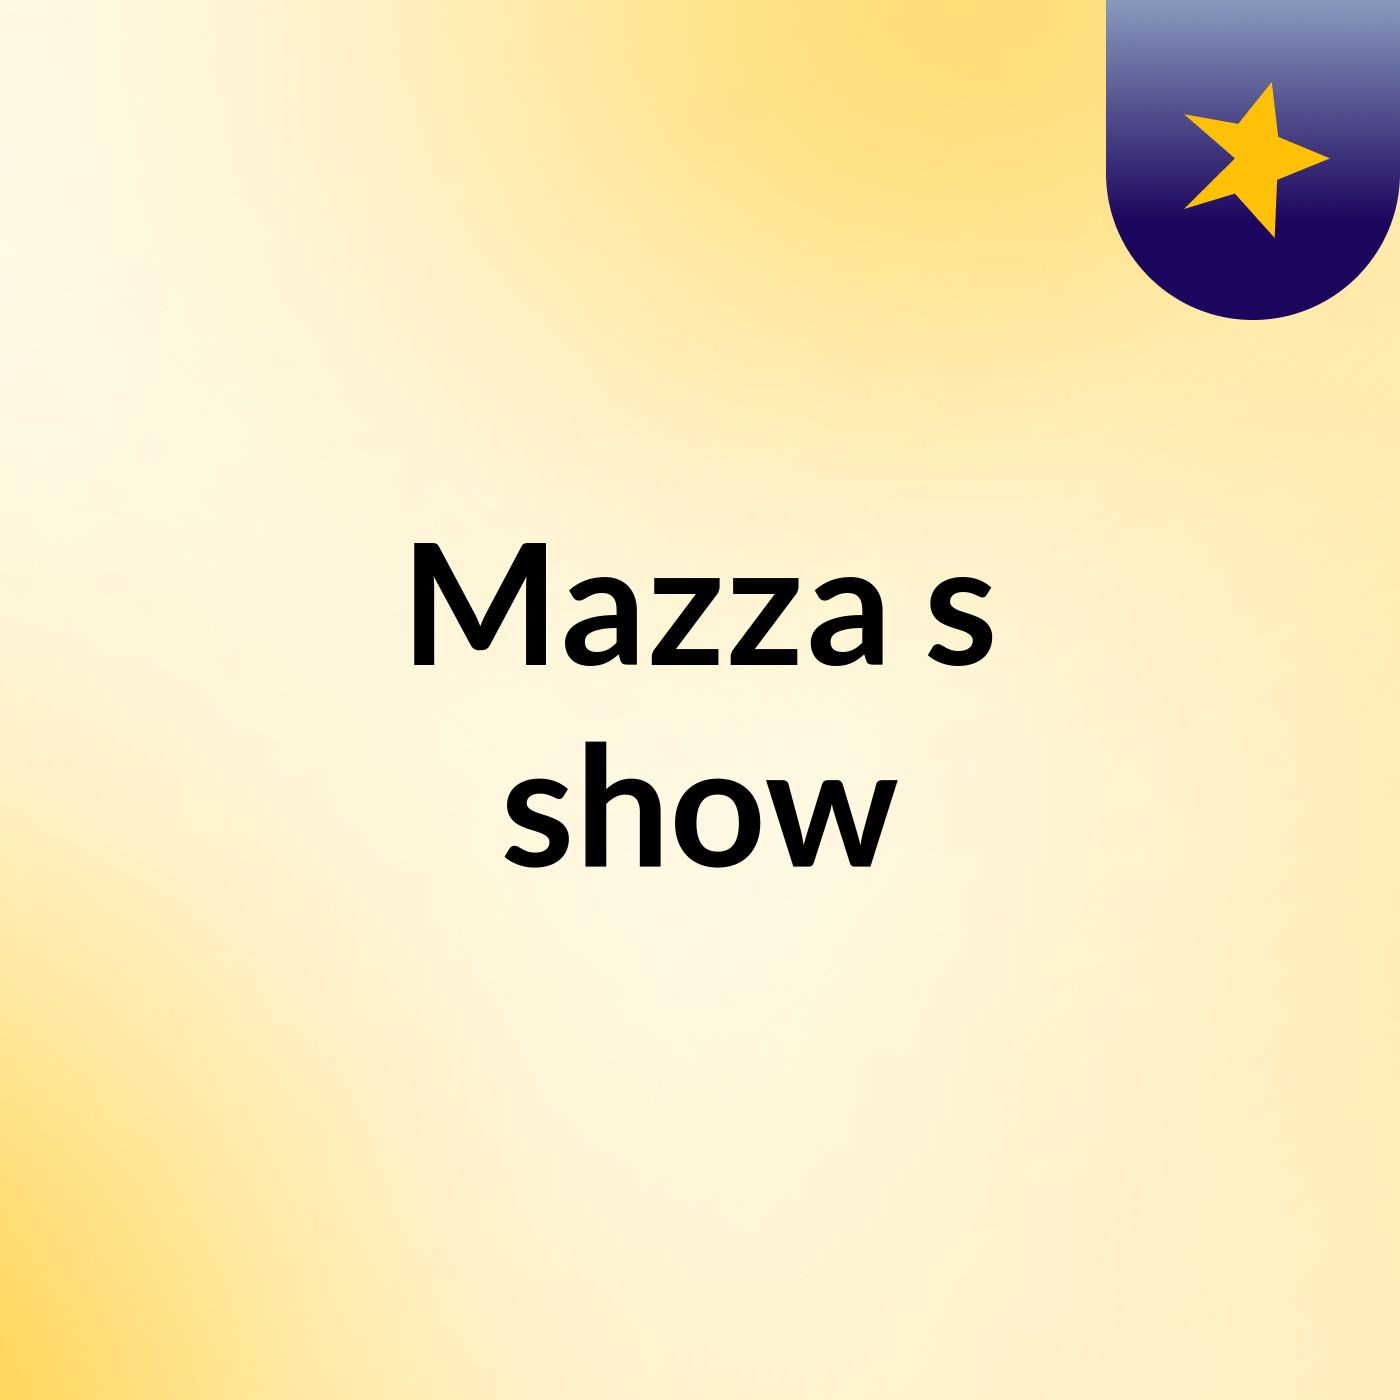 Mazza's show